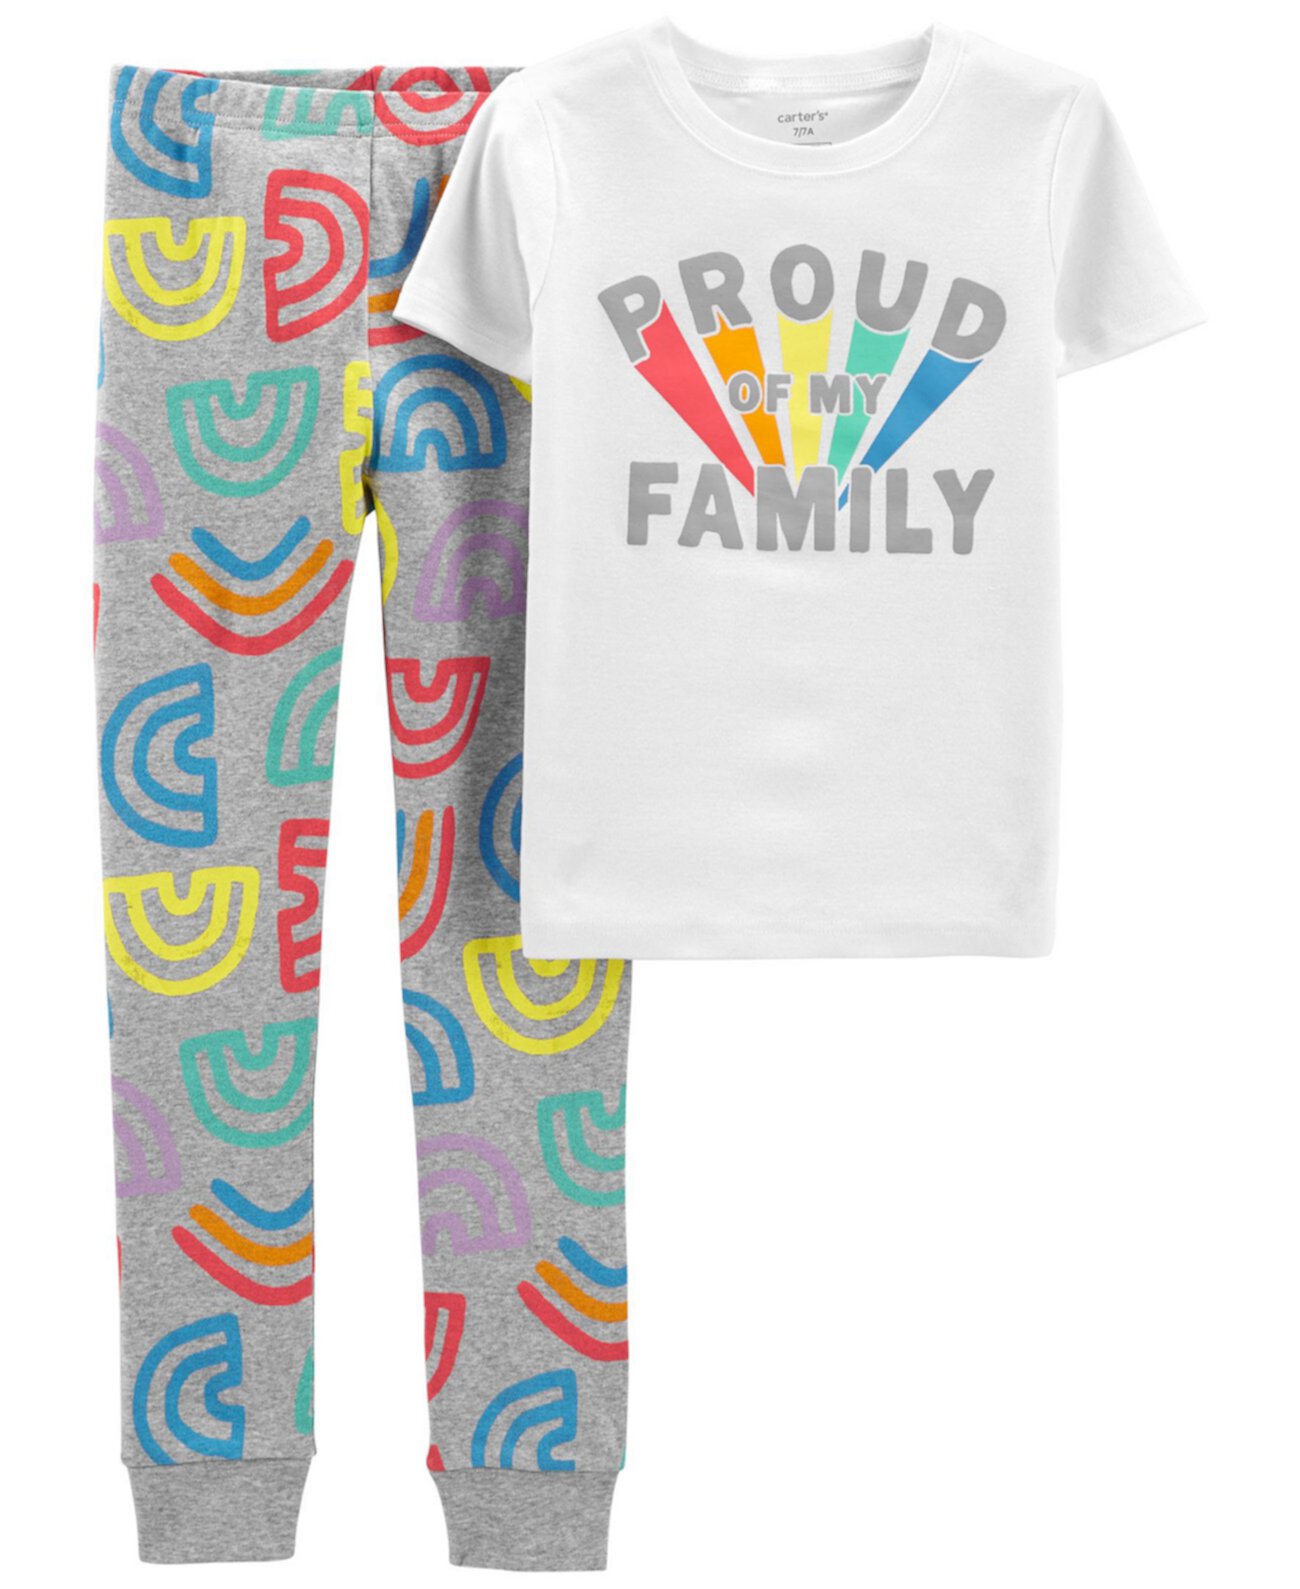 Пижама Pride Snug Fit для мальчиков и девочек, комплект из 2 предметов Carter's